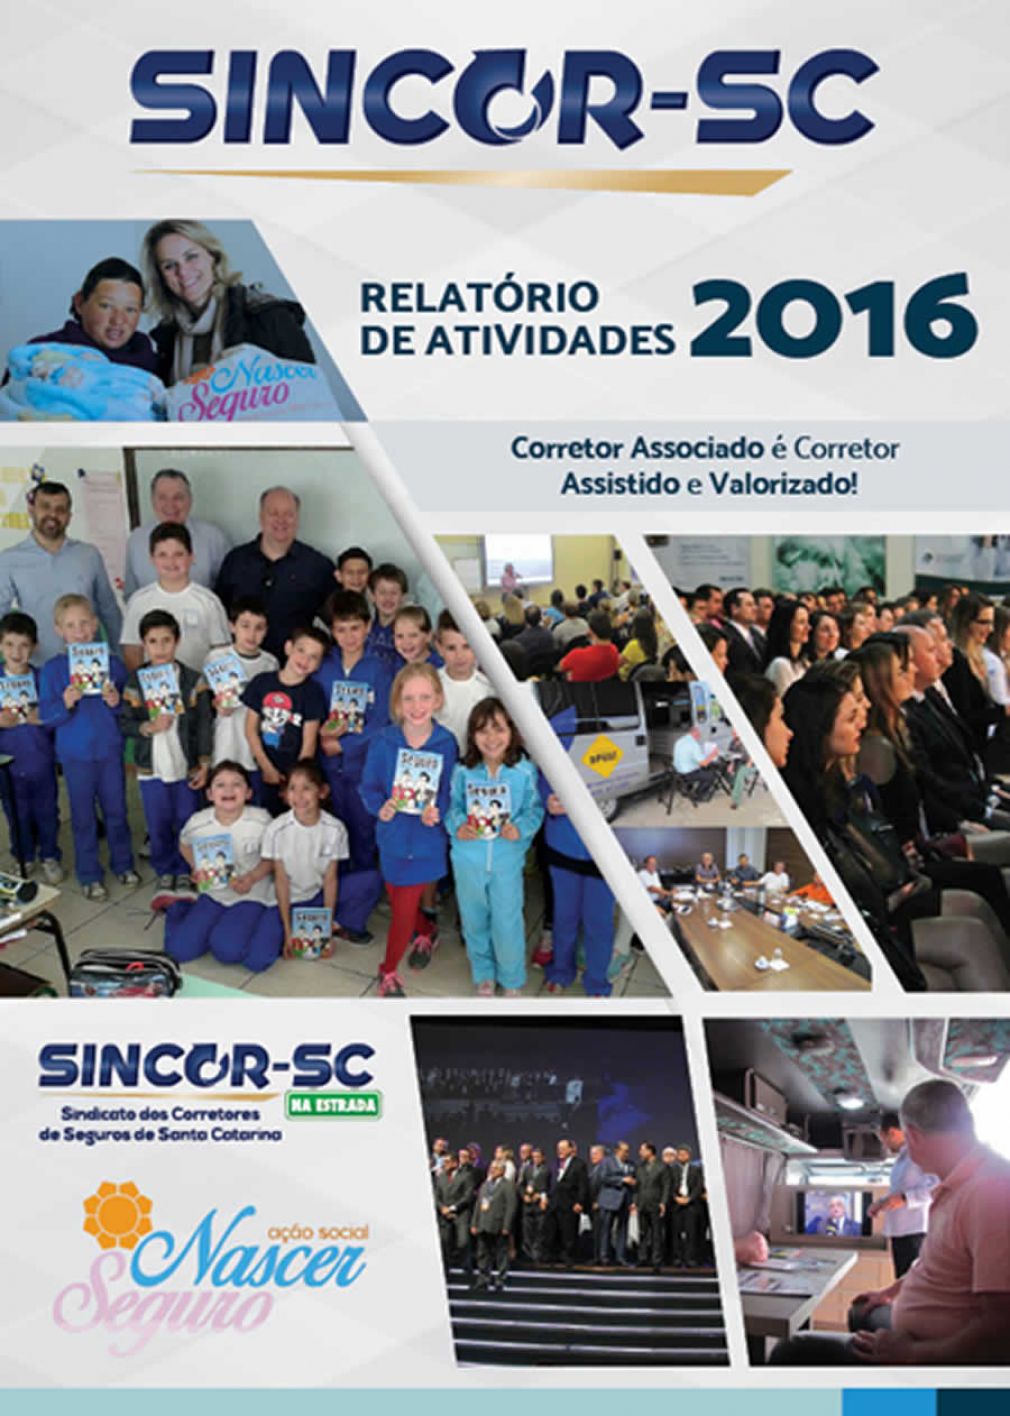 SINCOR-SC disponibiliza relatório de atividades 2016